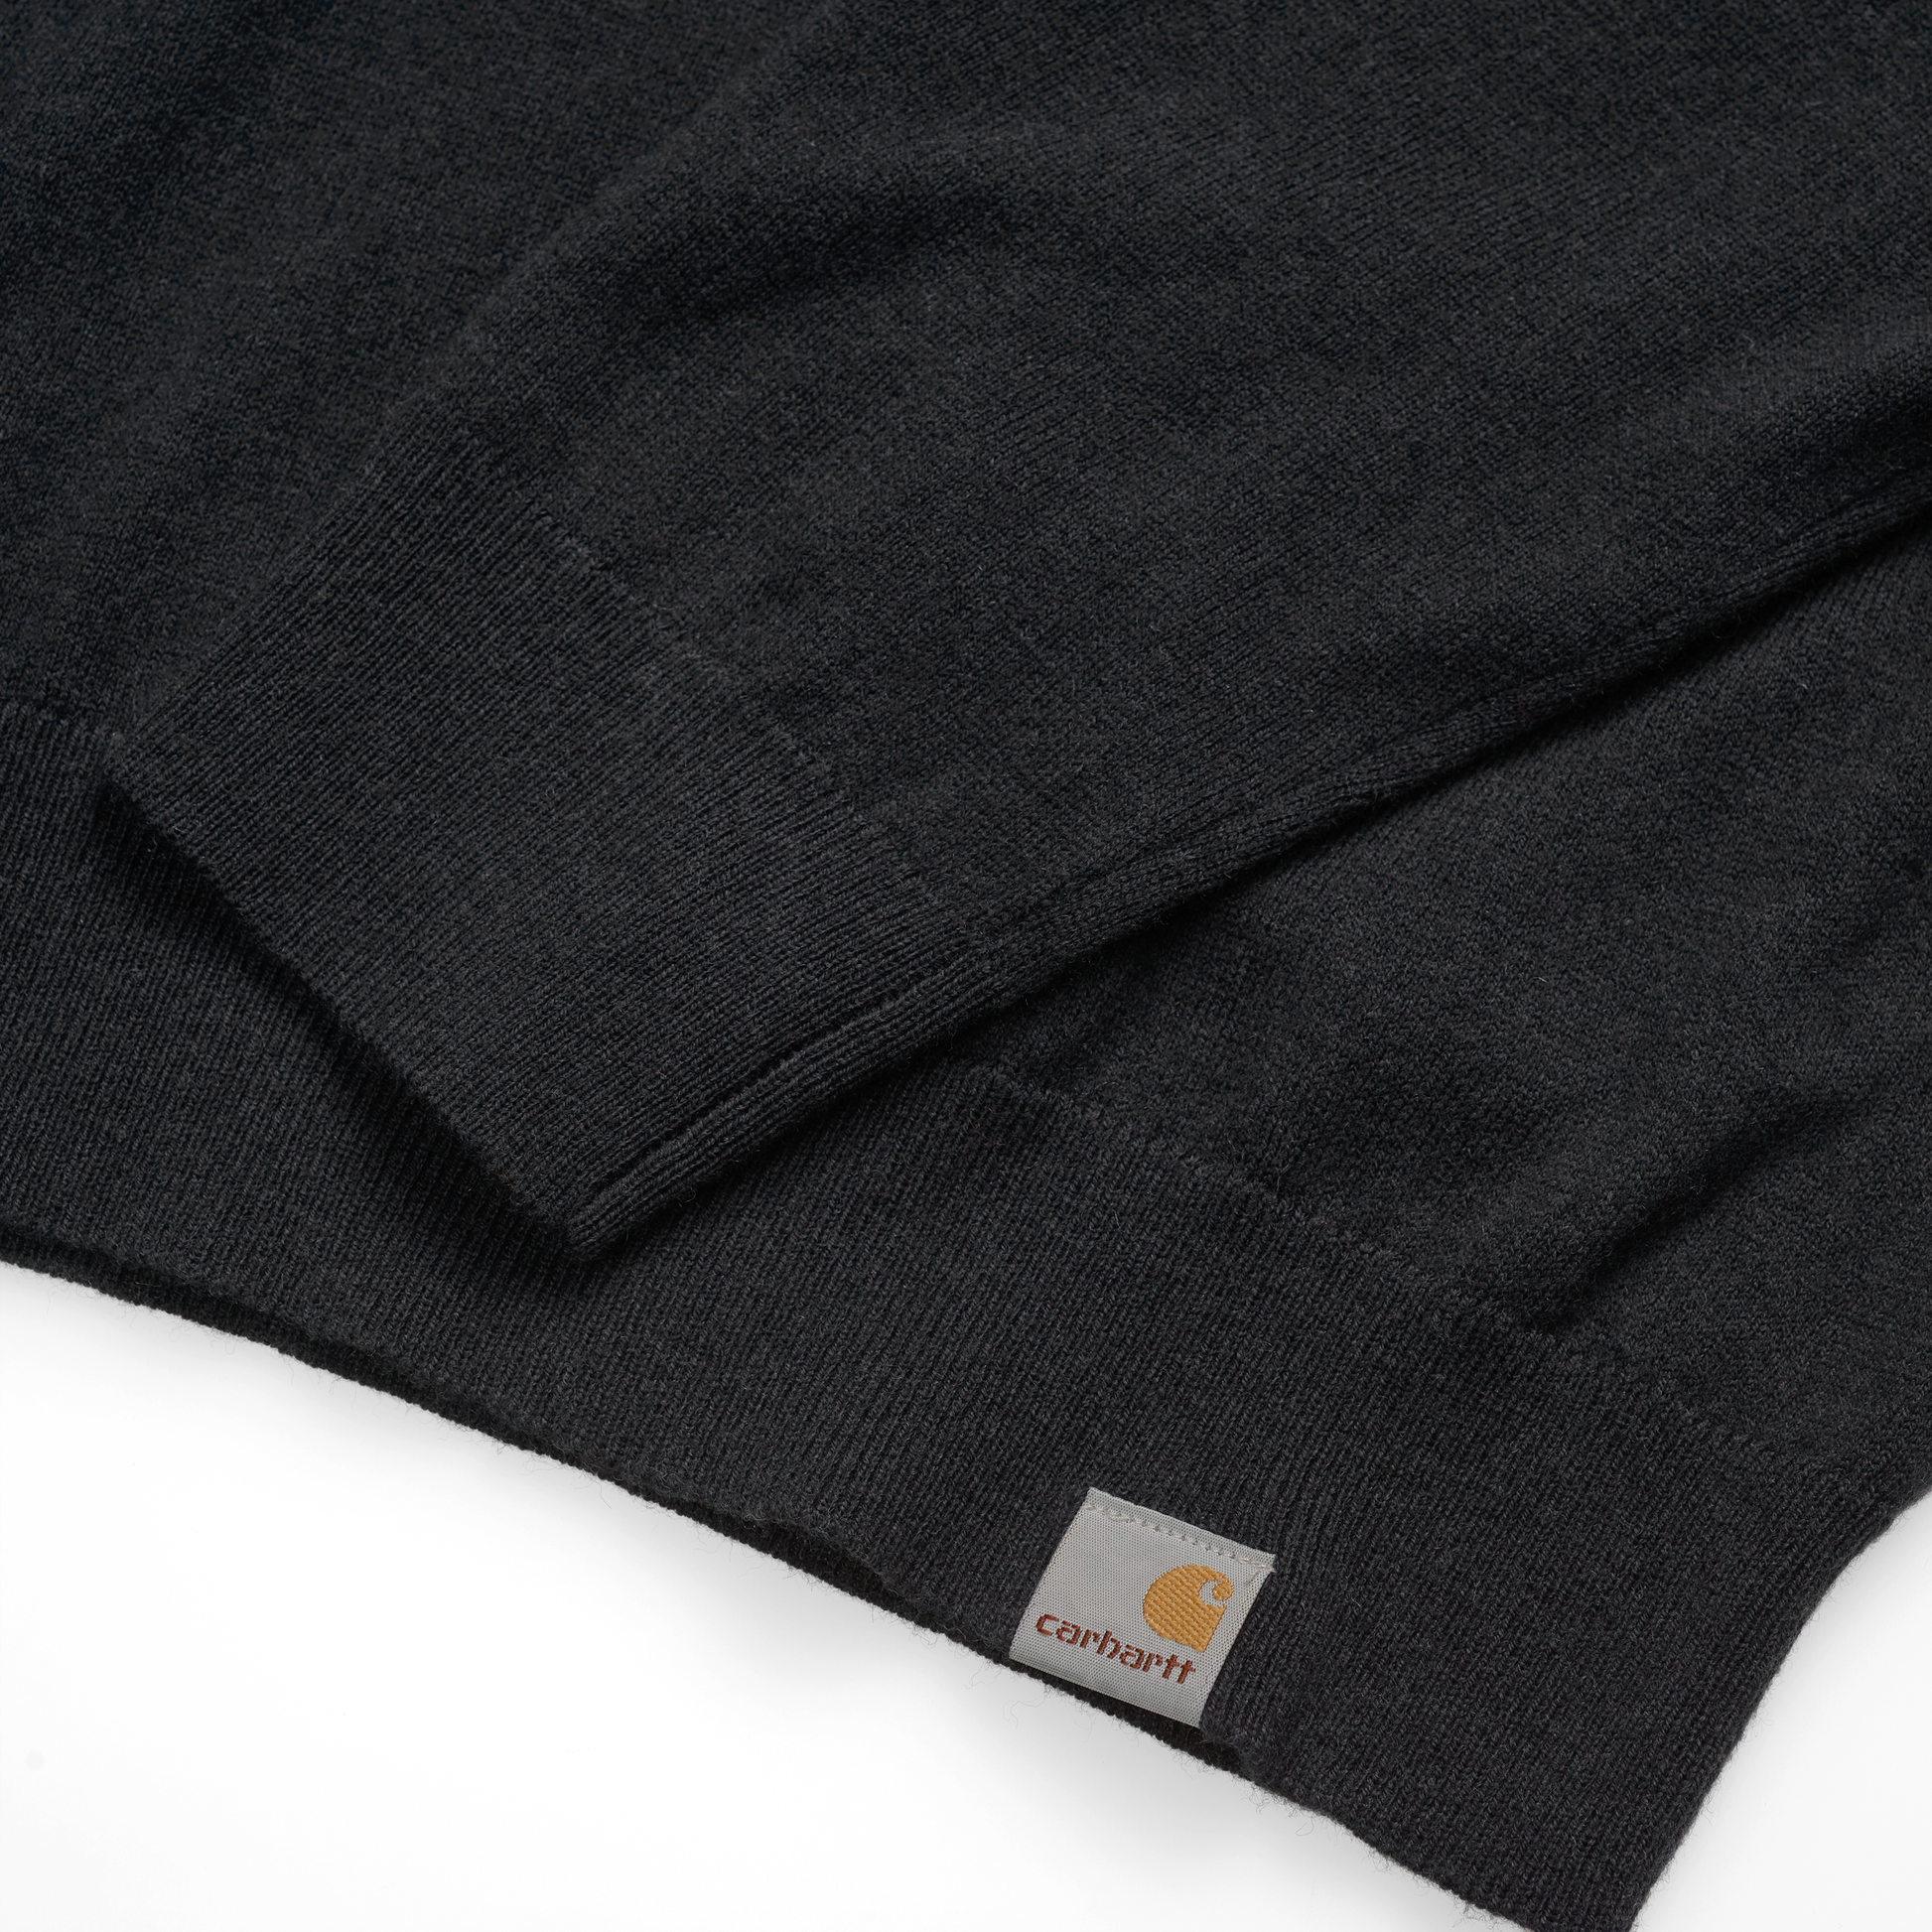 Carhartt WIP Playoff Turtleneck Sweater em preto. Foto de detalhe do punho, cós e logotipo.